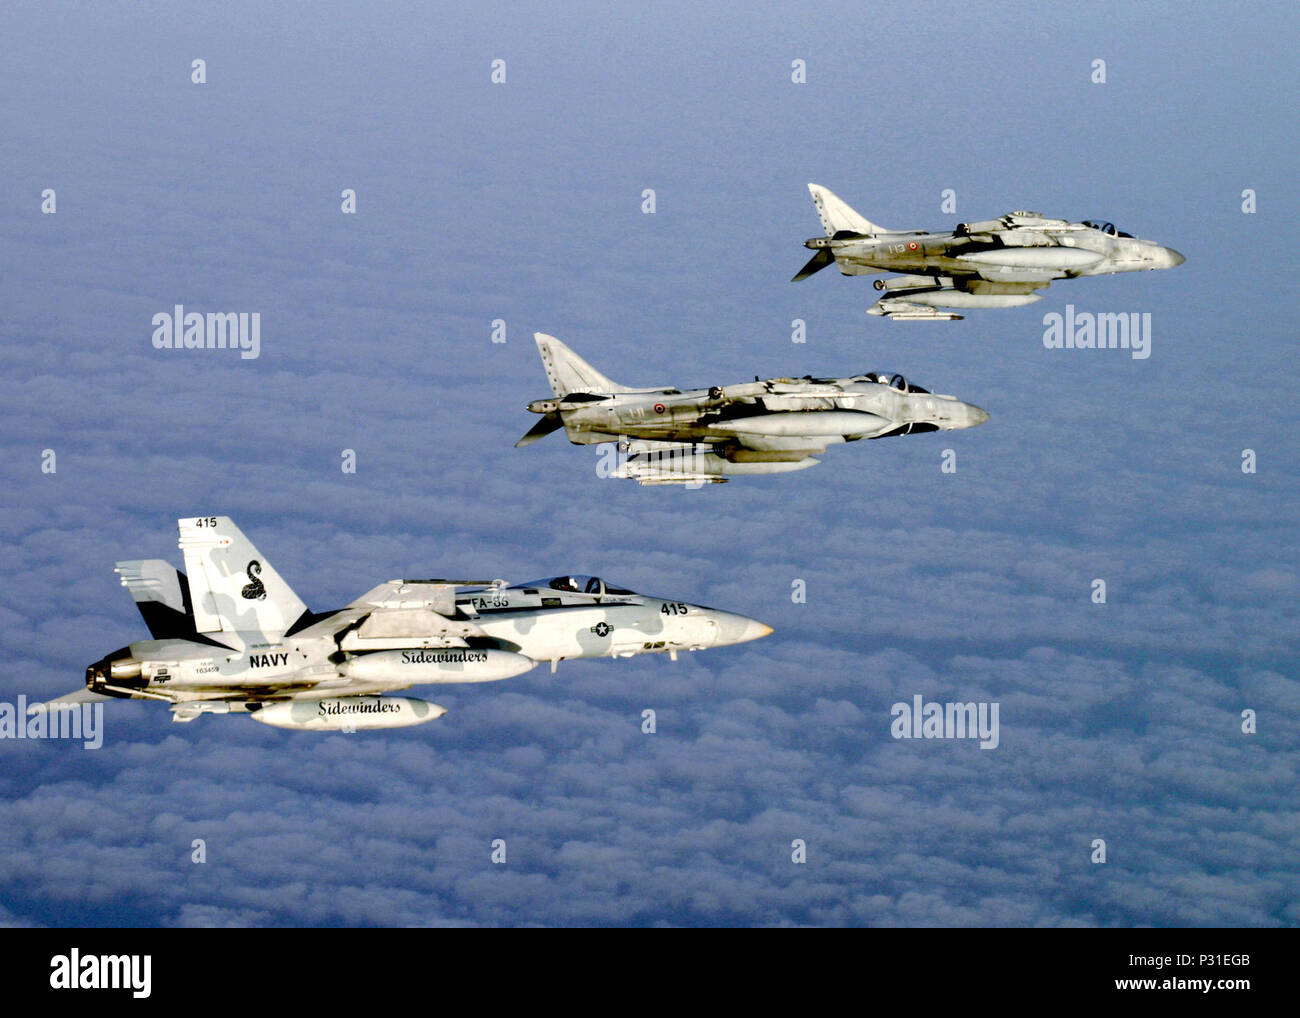 Ocean (Luglio 10, 2004) - Sopra le nuvole sopra l'Oceano Atlantico un F/A-18C Hornet assegnati al 'Sidewinders' di Strike Fighter Squadron otto sei (VFA-86) vola in formazione con due italiani AV-8B Harrier II+ assegnati alla Marina Militare Italiana portaerei sua Giuseppi Garabaldi (C 551) Dopo la conduzione di aria dissimili Combat Training (DACT). Gli aerei sono parte di aquila maestosa, una multinazionale esercizio essendo condotta al largo delle coste del Marocco. L'esercizio dimostra la forza combinata delle capacità e tempi di risposta veloci della partecipazione Naval Air, sottomarini e superficie warfare g Foto Stock